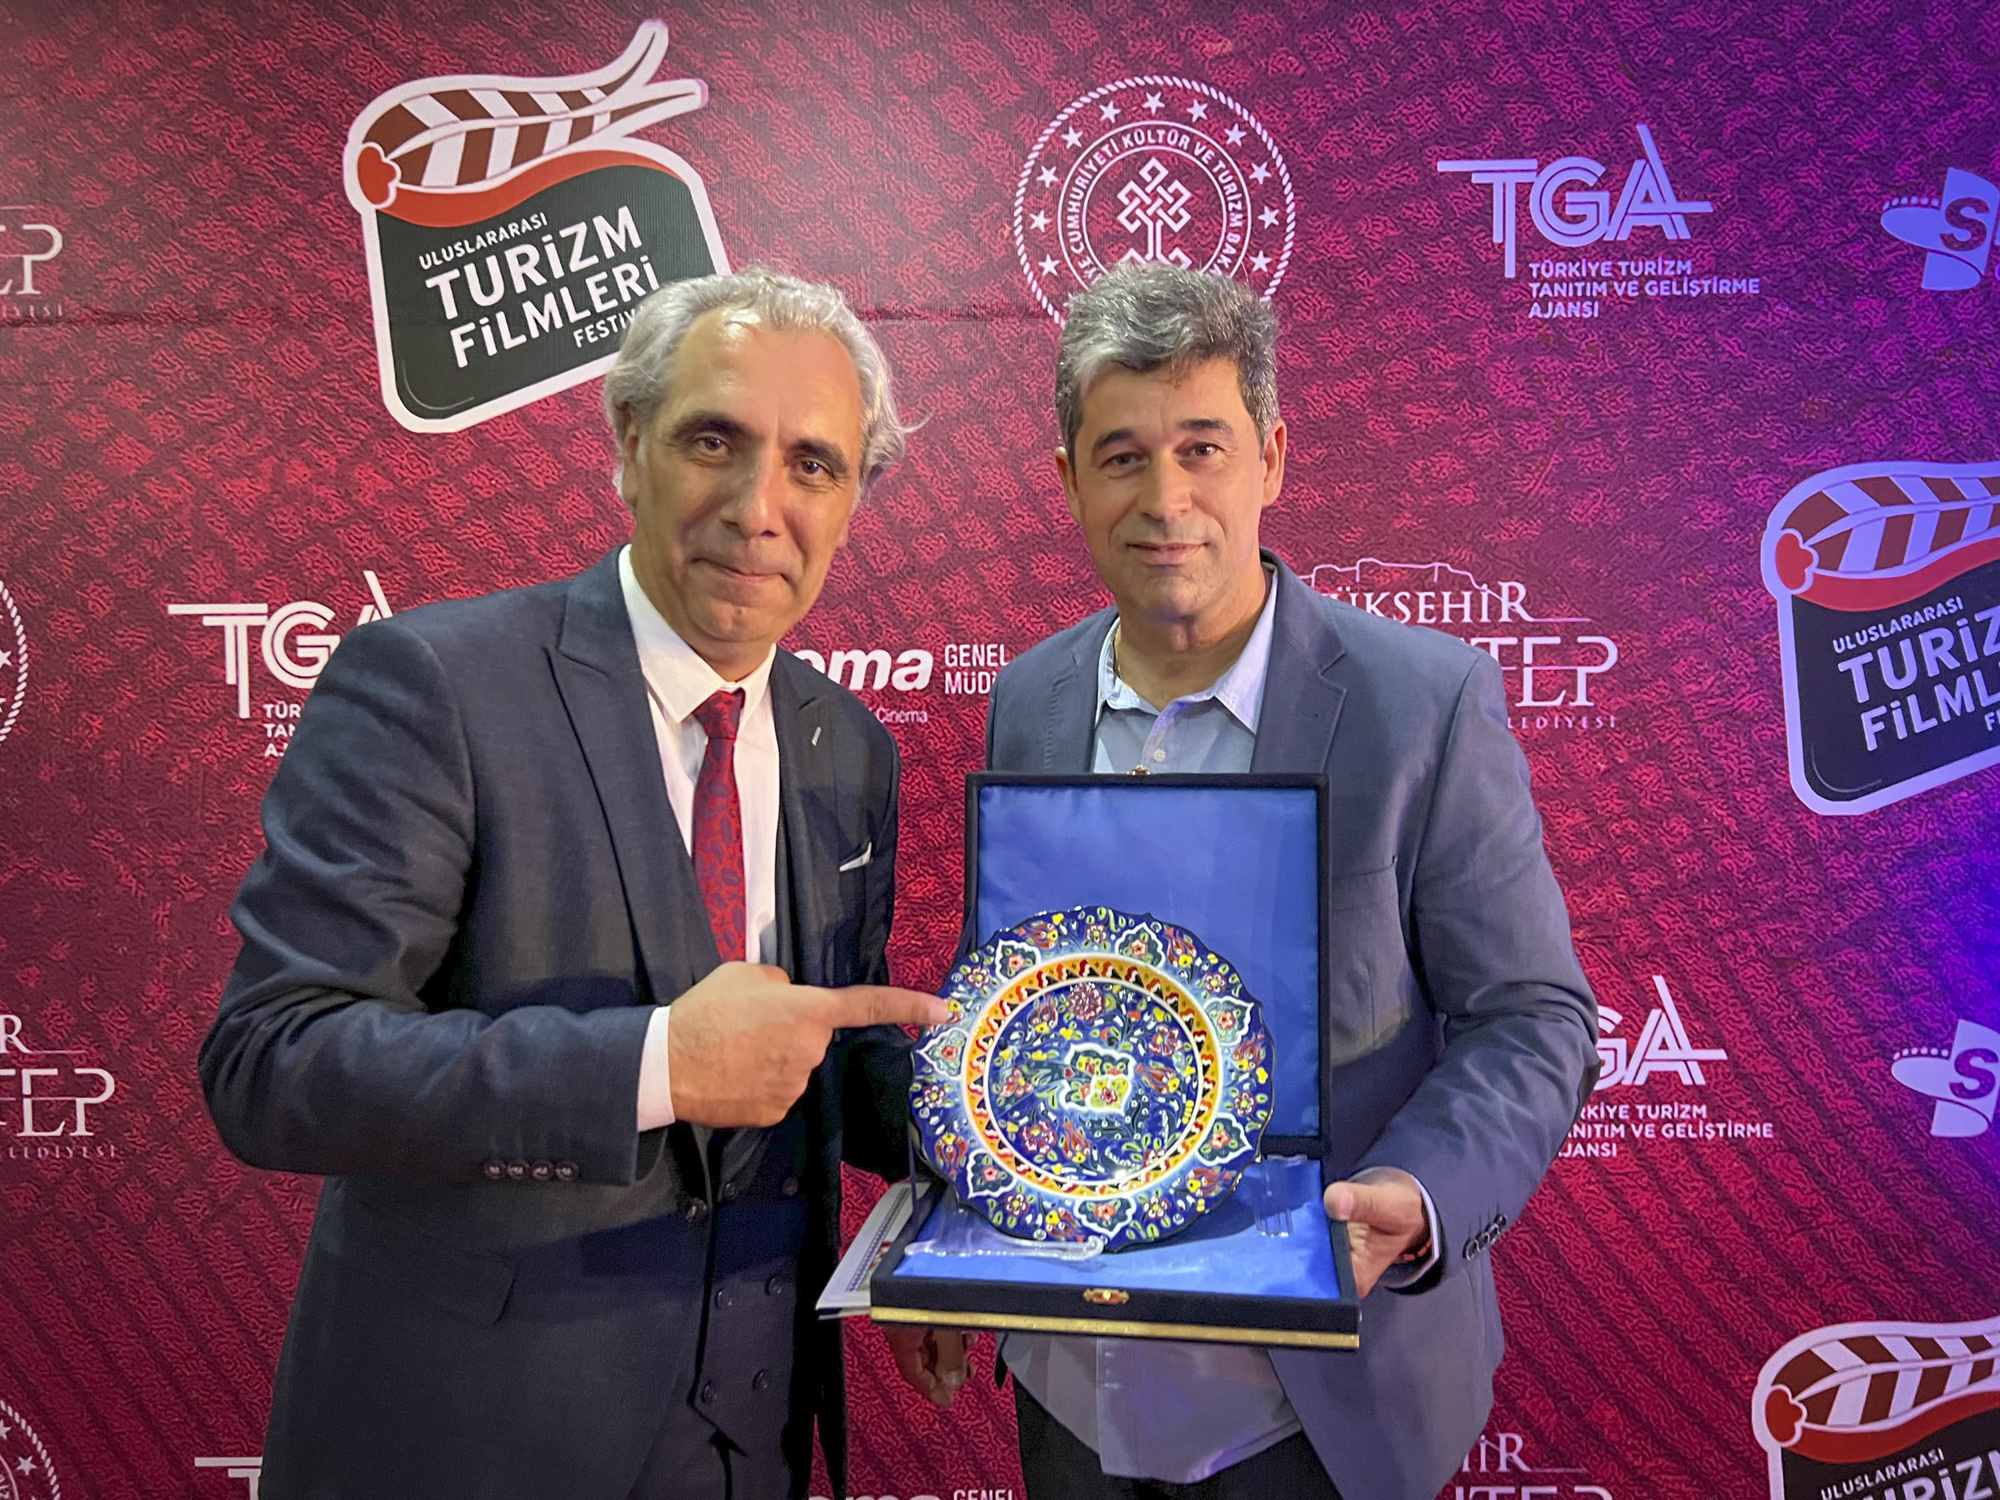 Paulo Ferreira premiado na Turquia